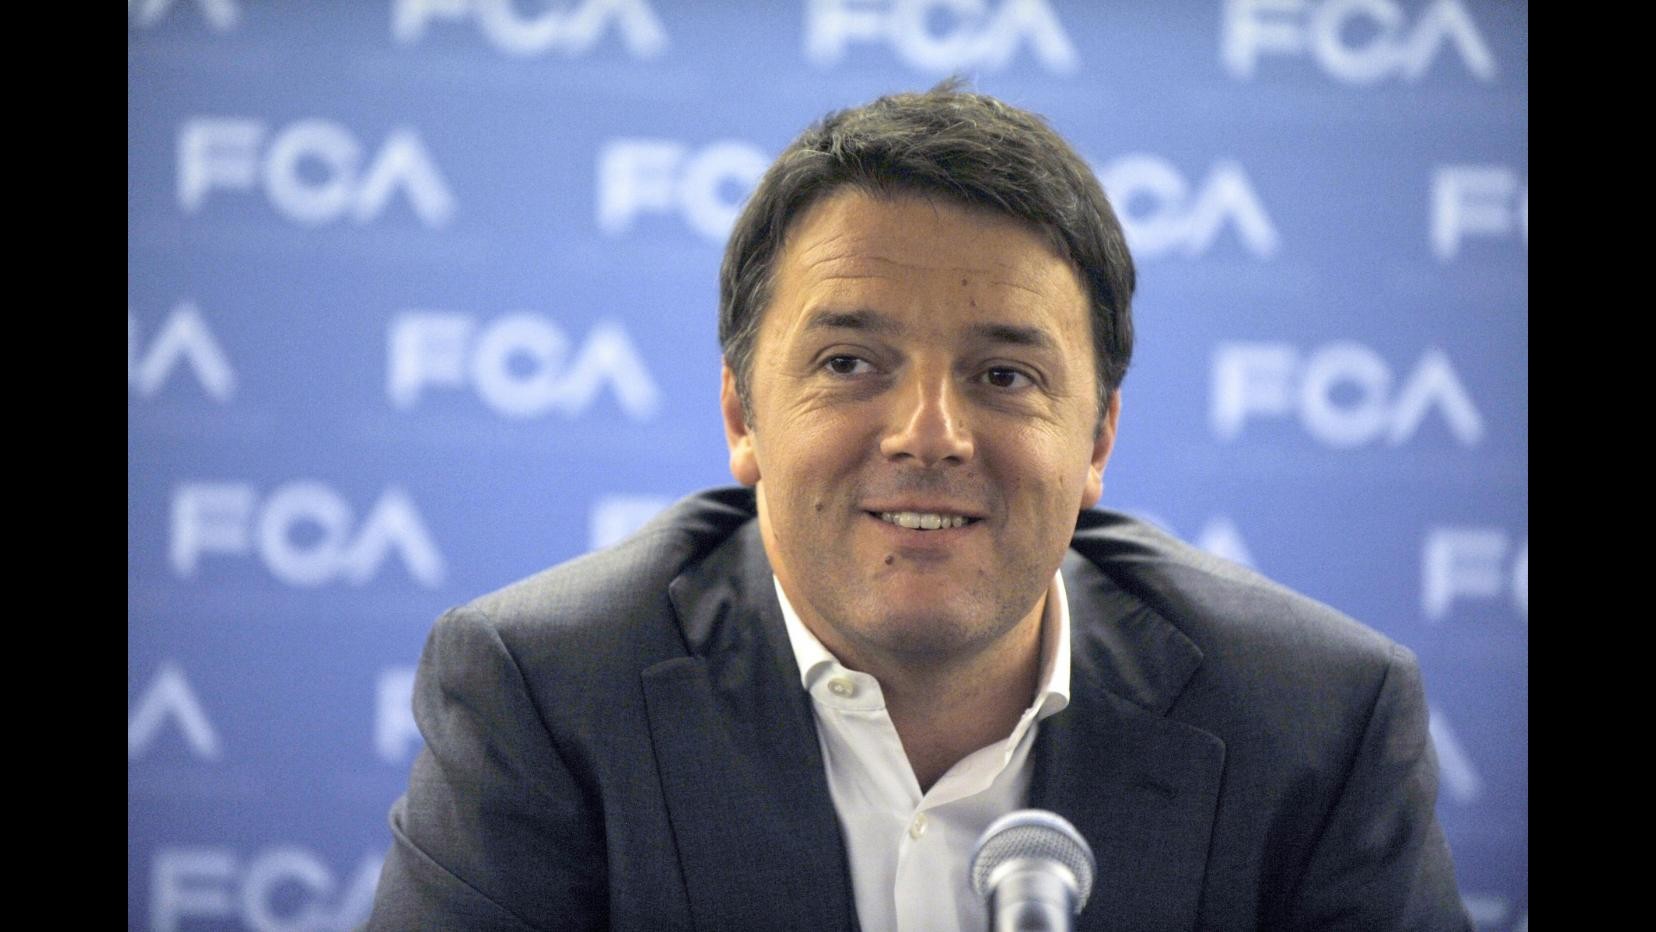 Governo, Renzi: L’Italia non è un Paese finito, può pensare al futuro